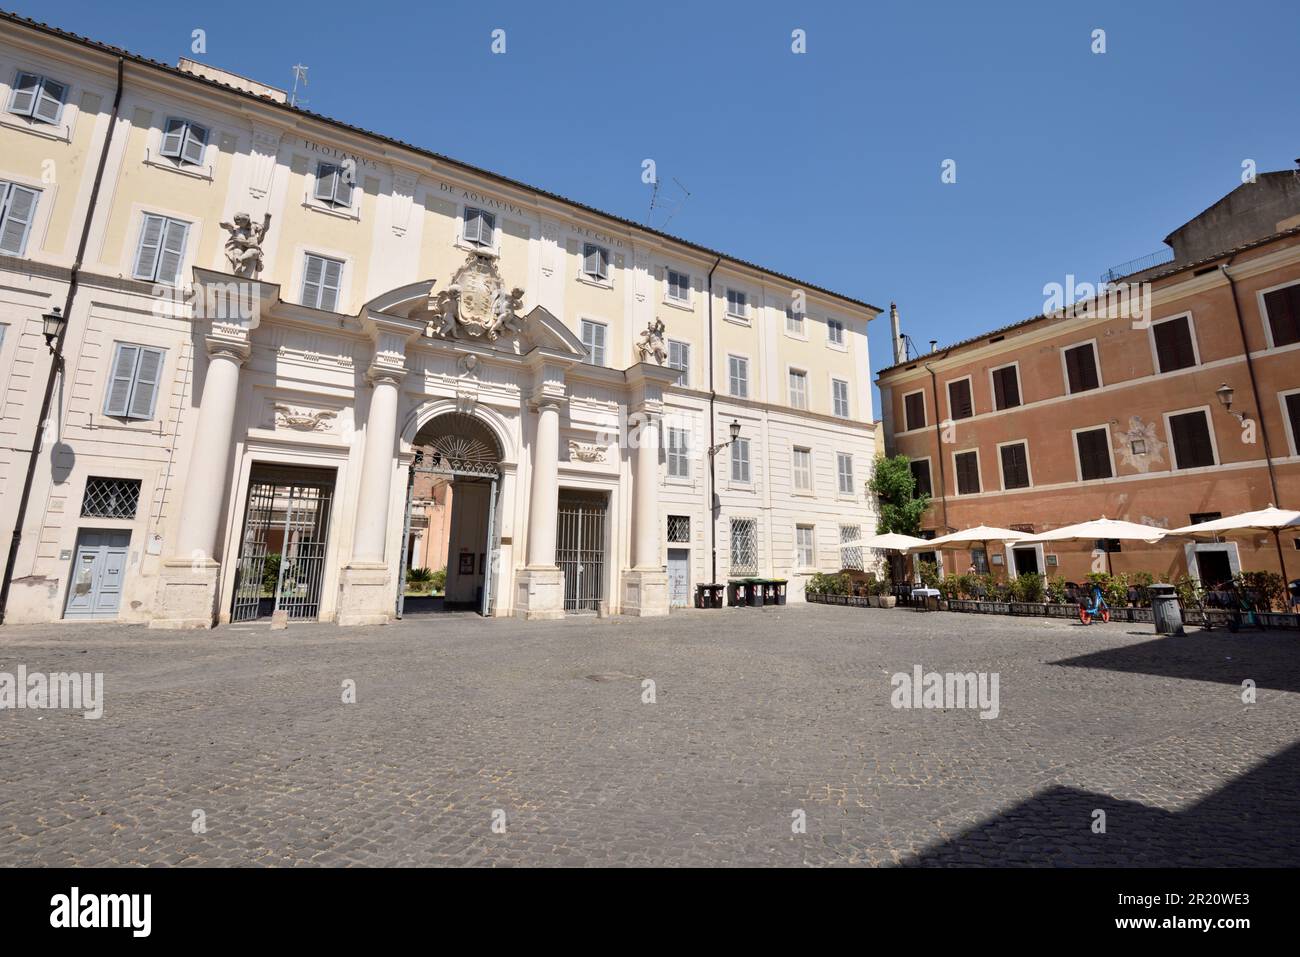 Italia, Roma, Trastevere, Piazza di Santa Cecilia, complesso di Santa Cecilia in Trastevere, ingresso monumentale del convento Foto Stock